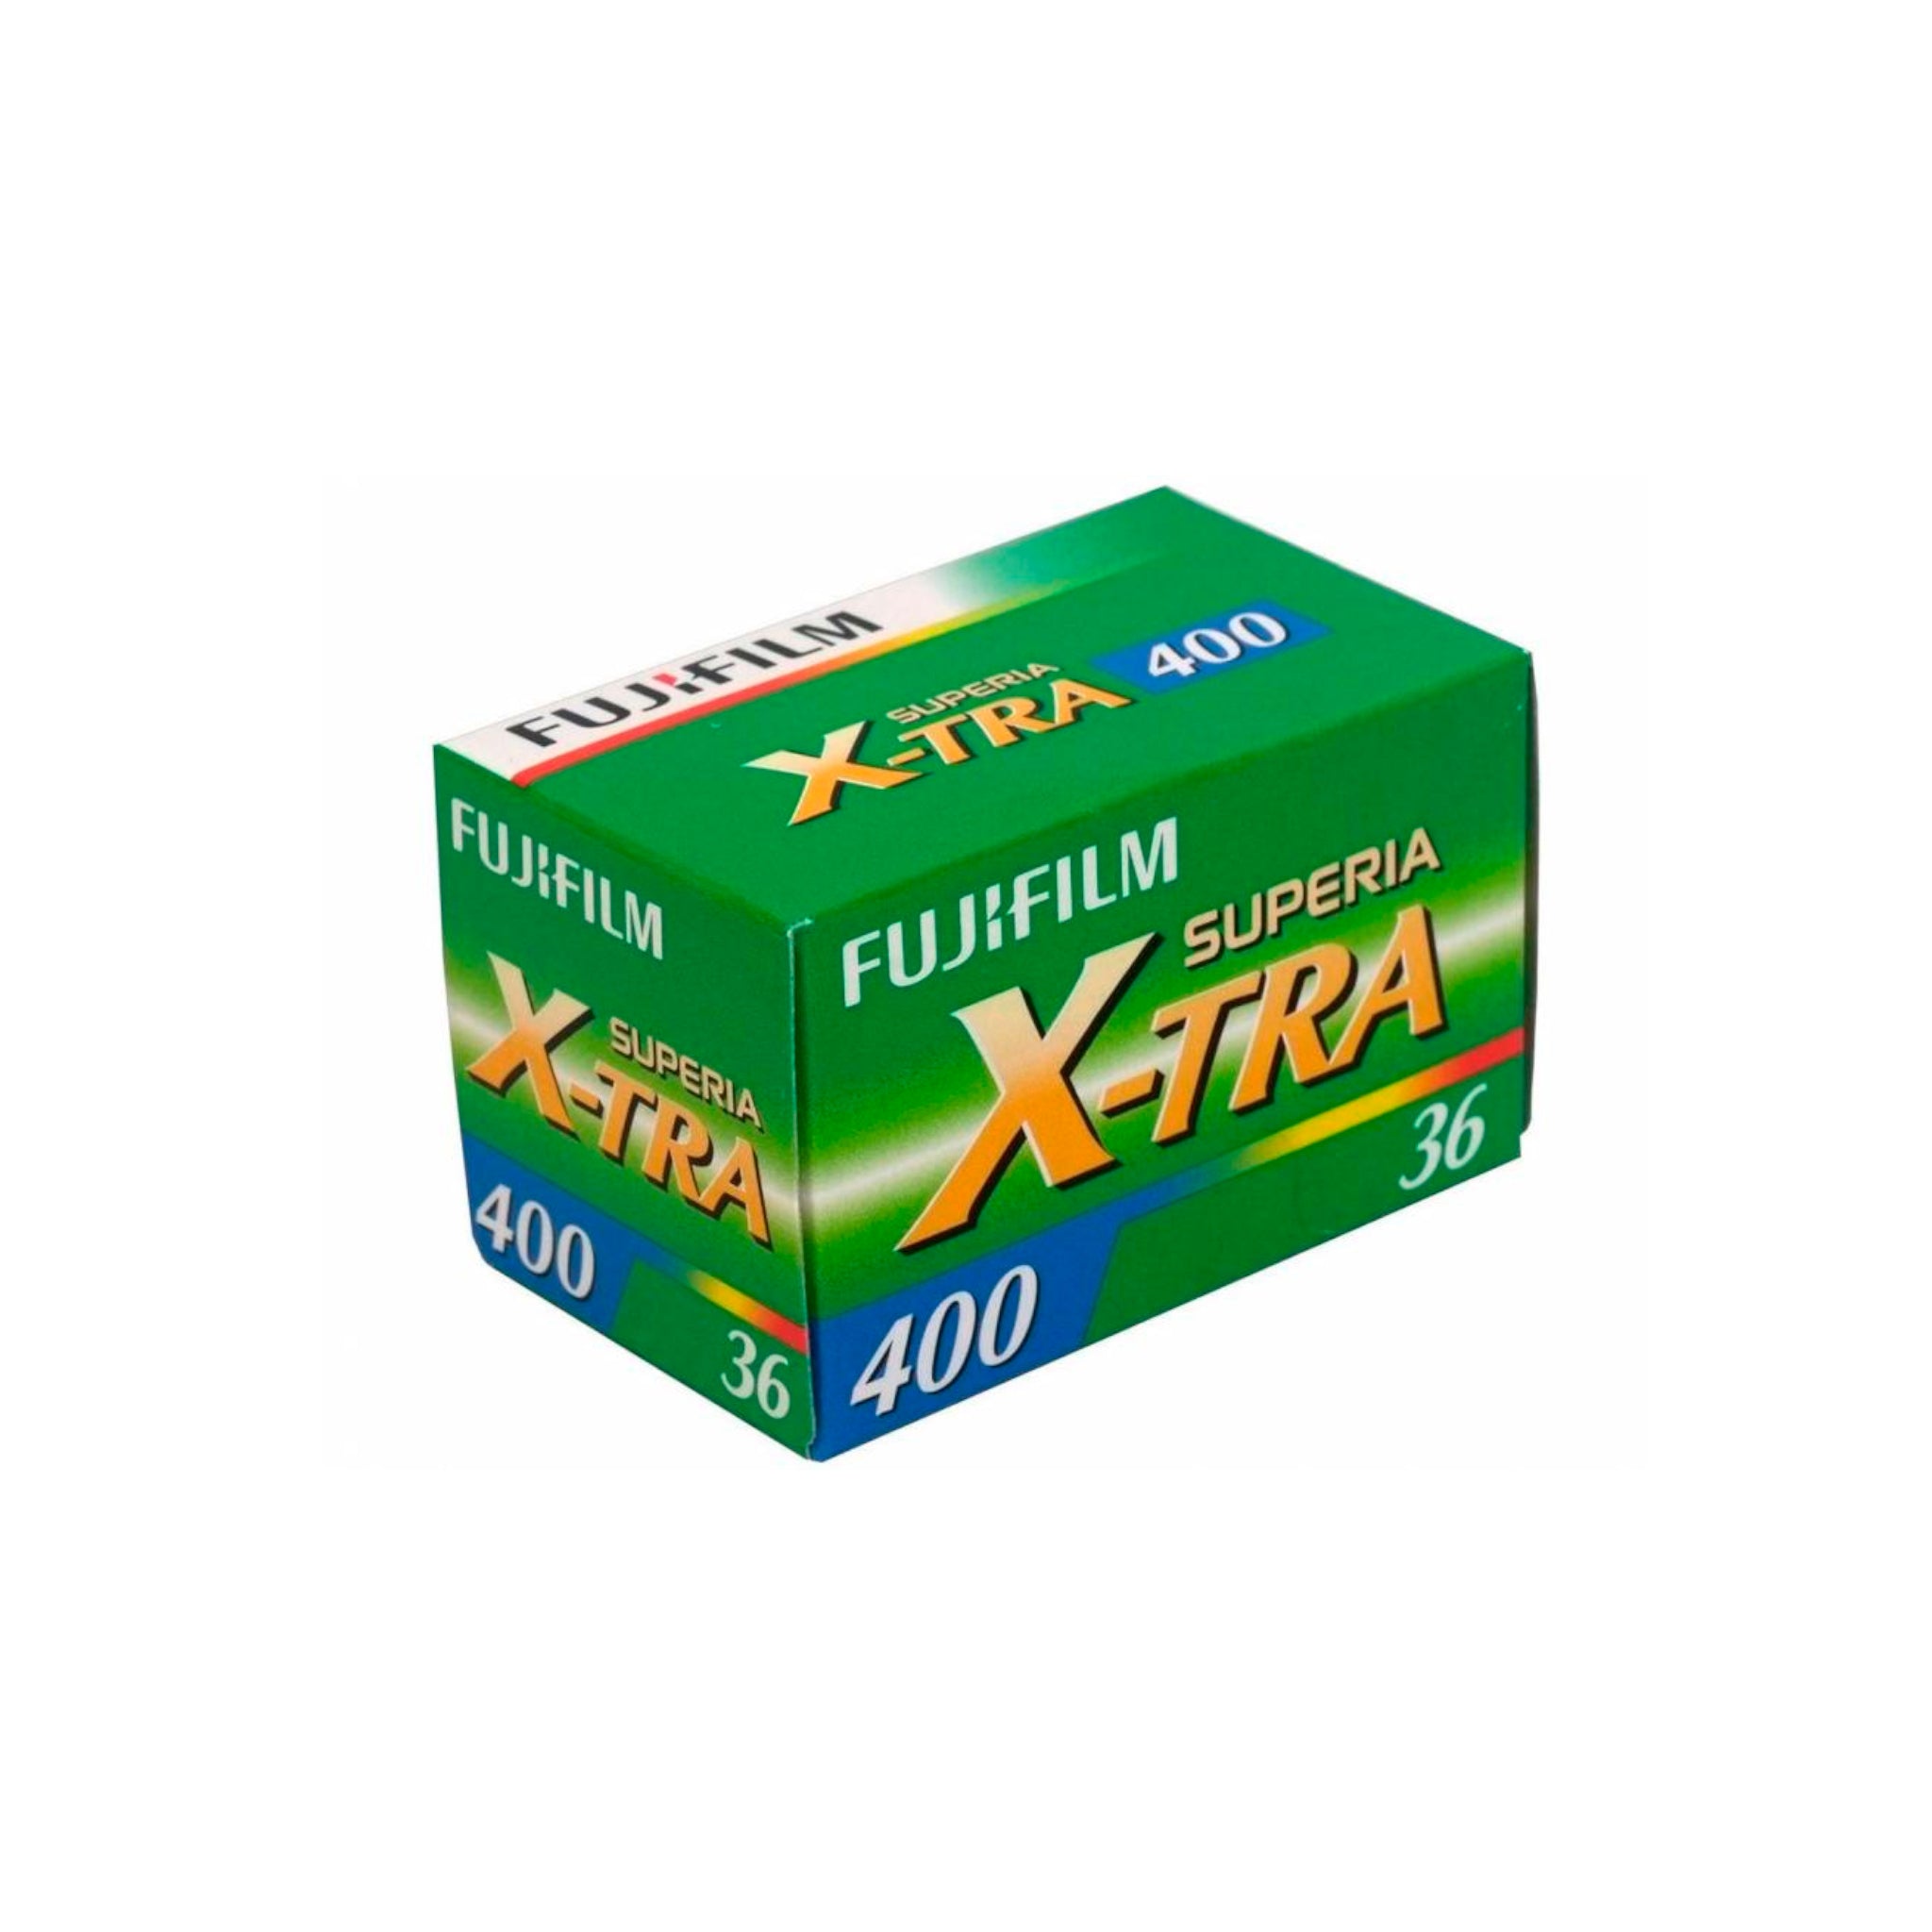 Fujifilm Superia XTra 400 35mm  Colour Film (36 exposures)